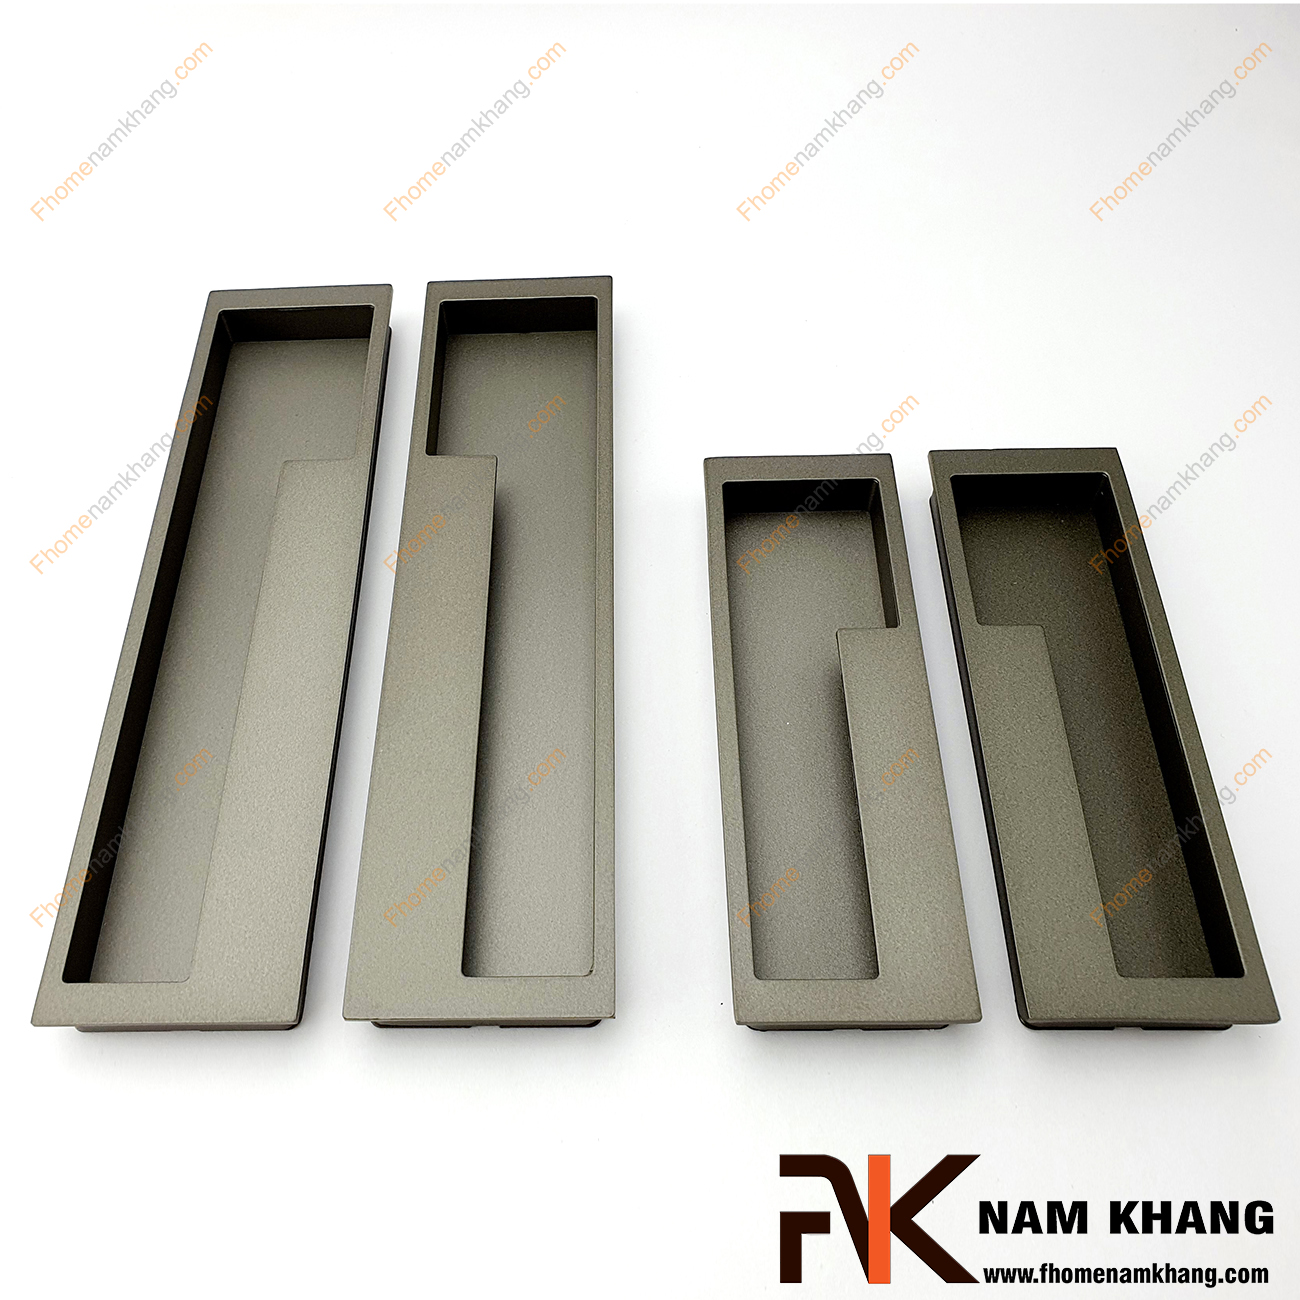 Tay nắm âm tủ màu xám NK438-128X là loại tay nắm chuyên dùng cho các loại tủ đặt ở những nơi có không gian hạn chế hoặc dùng để nâng cao tính thẫm mỹ của sản phẩm.